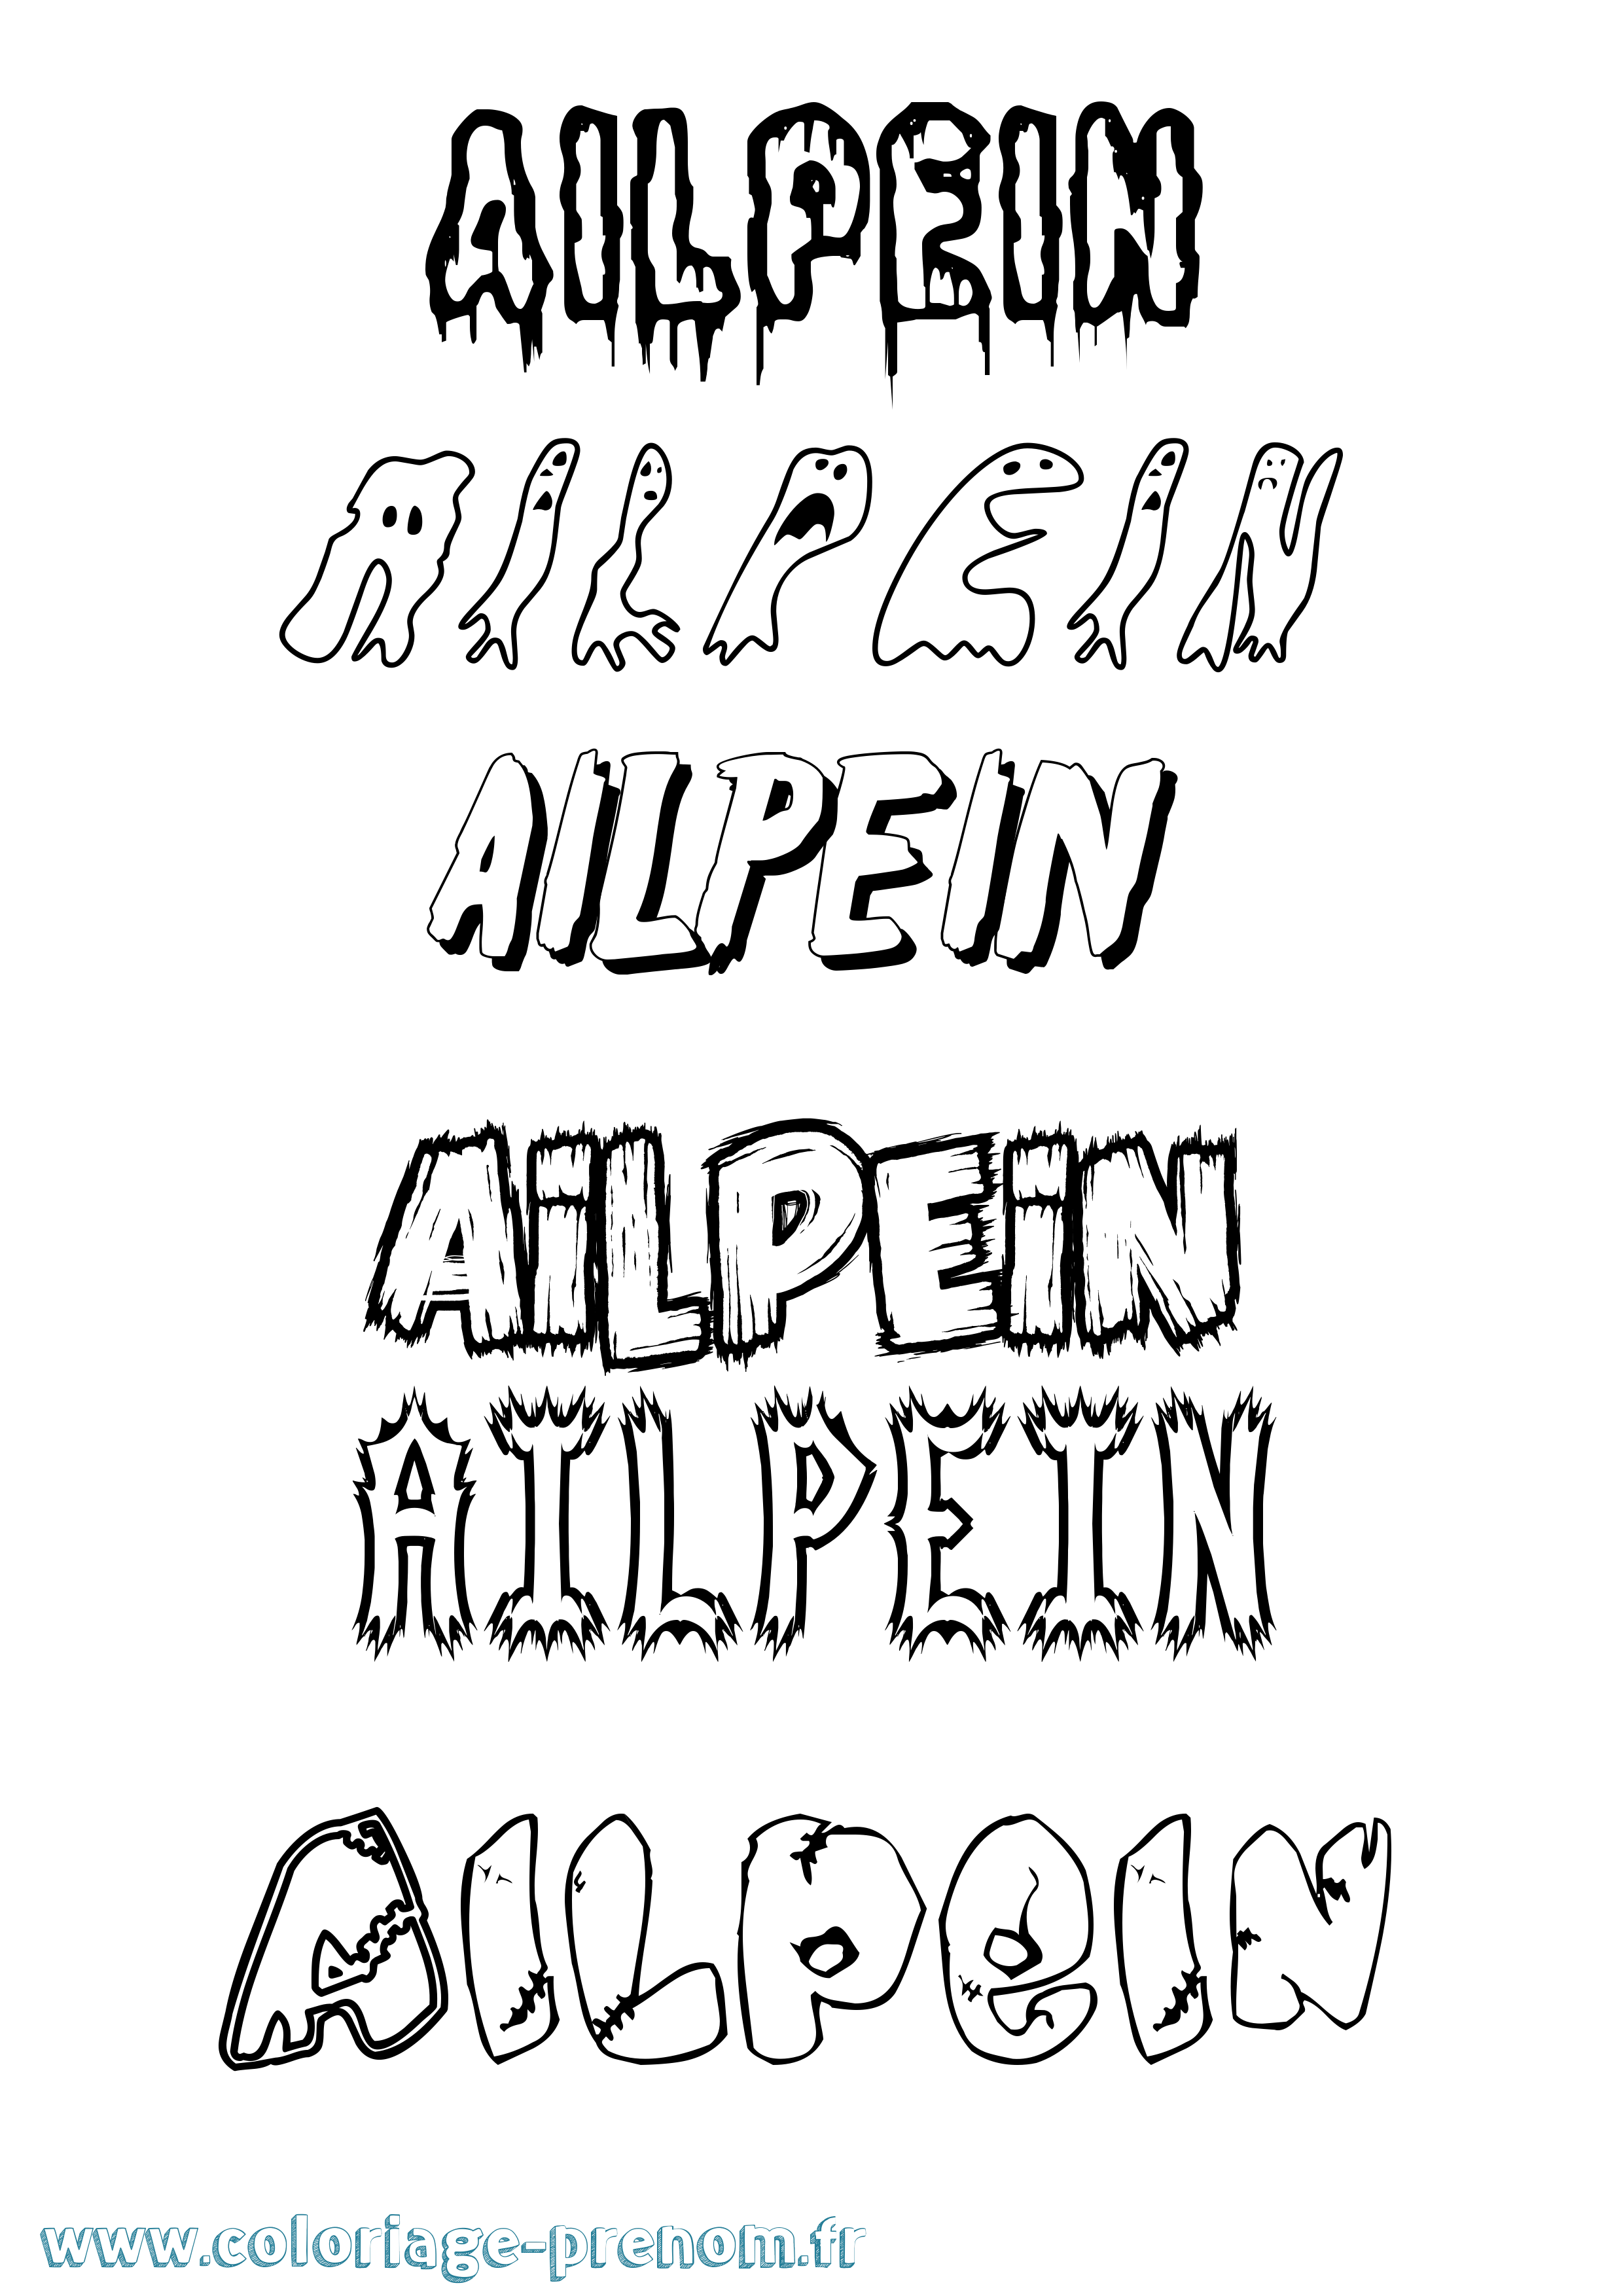 Coloriage prénom Ailpein Frisson